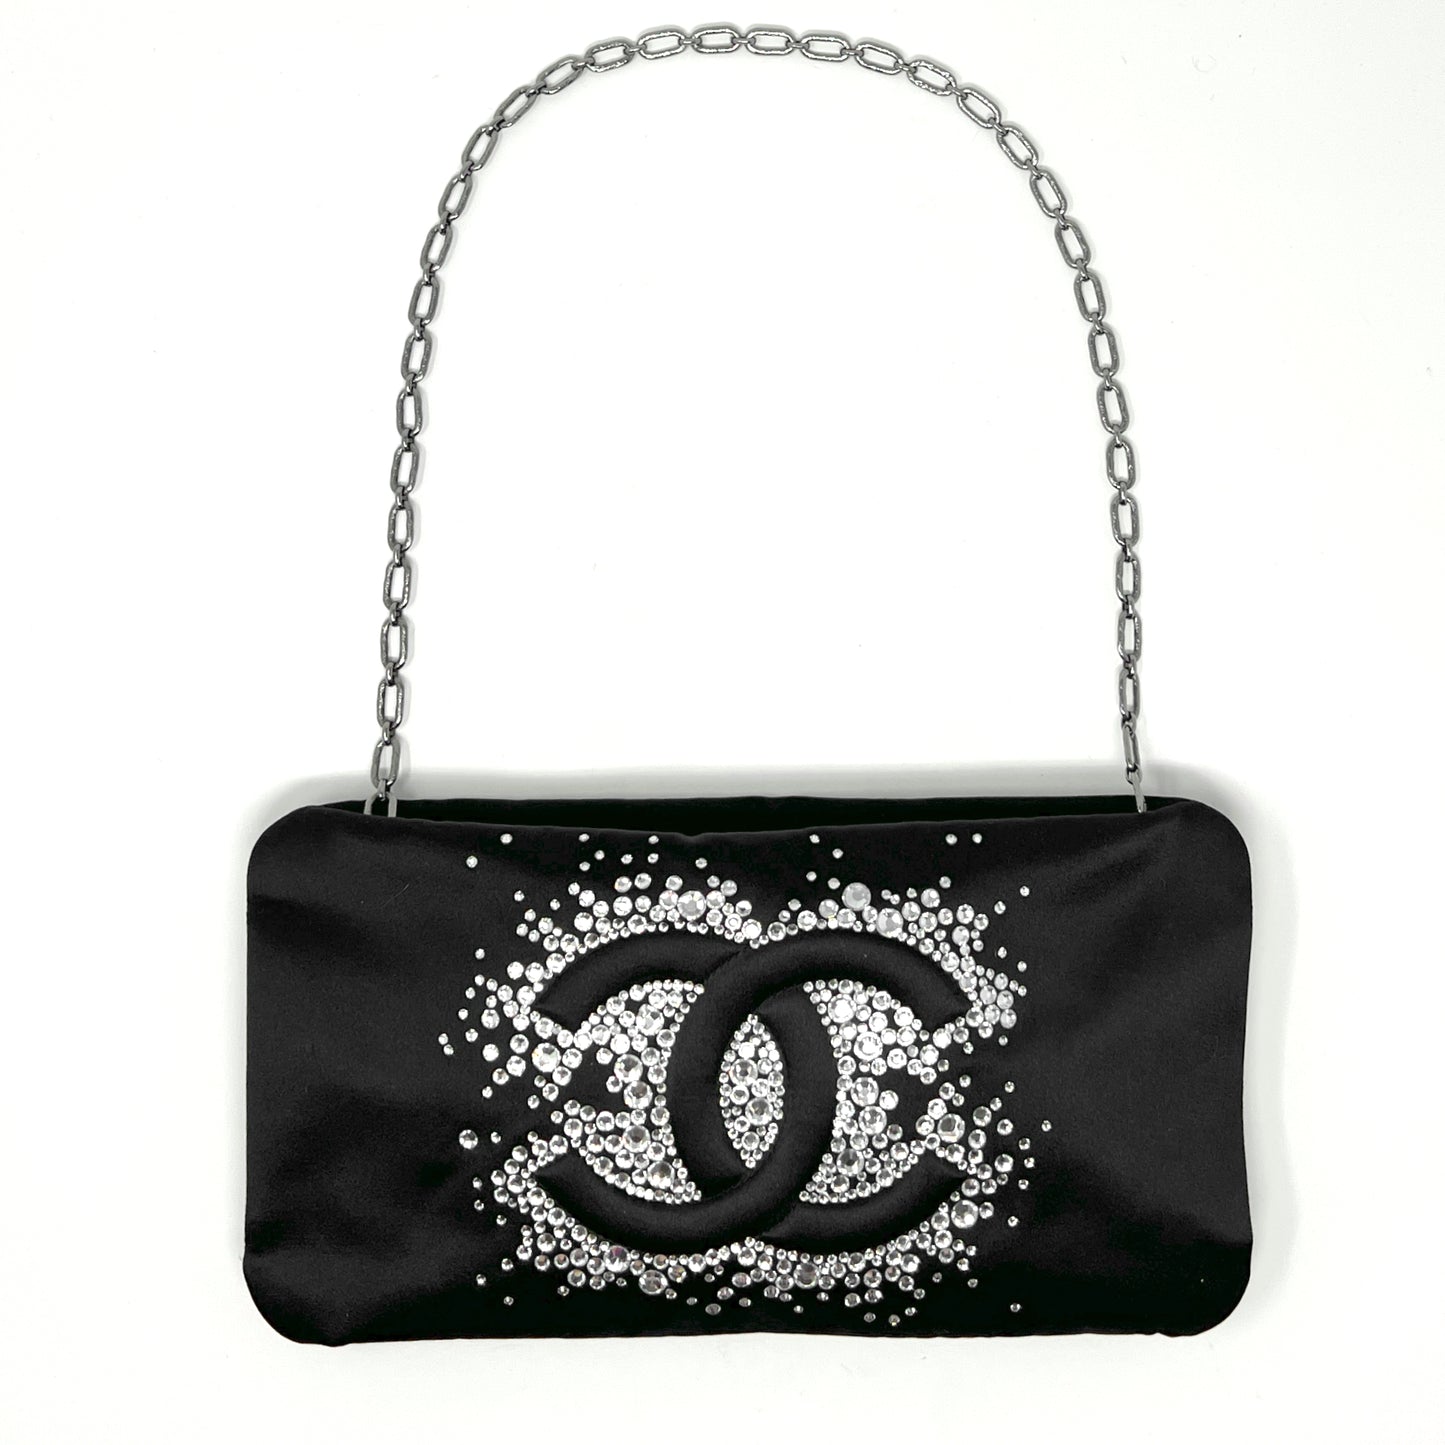 Chanel Diamante Swarovski Crystal Embellished. Black Satin Evening Bag Clutch